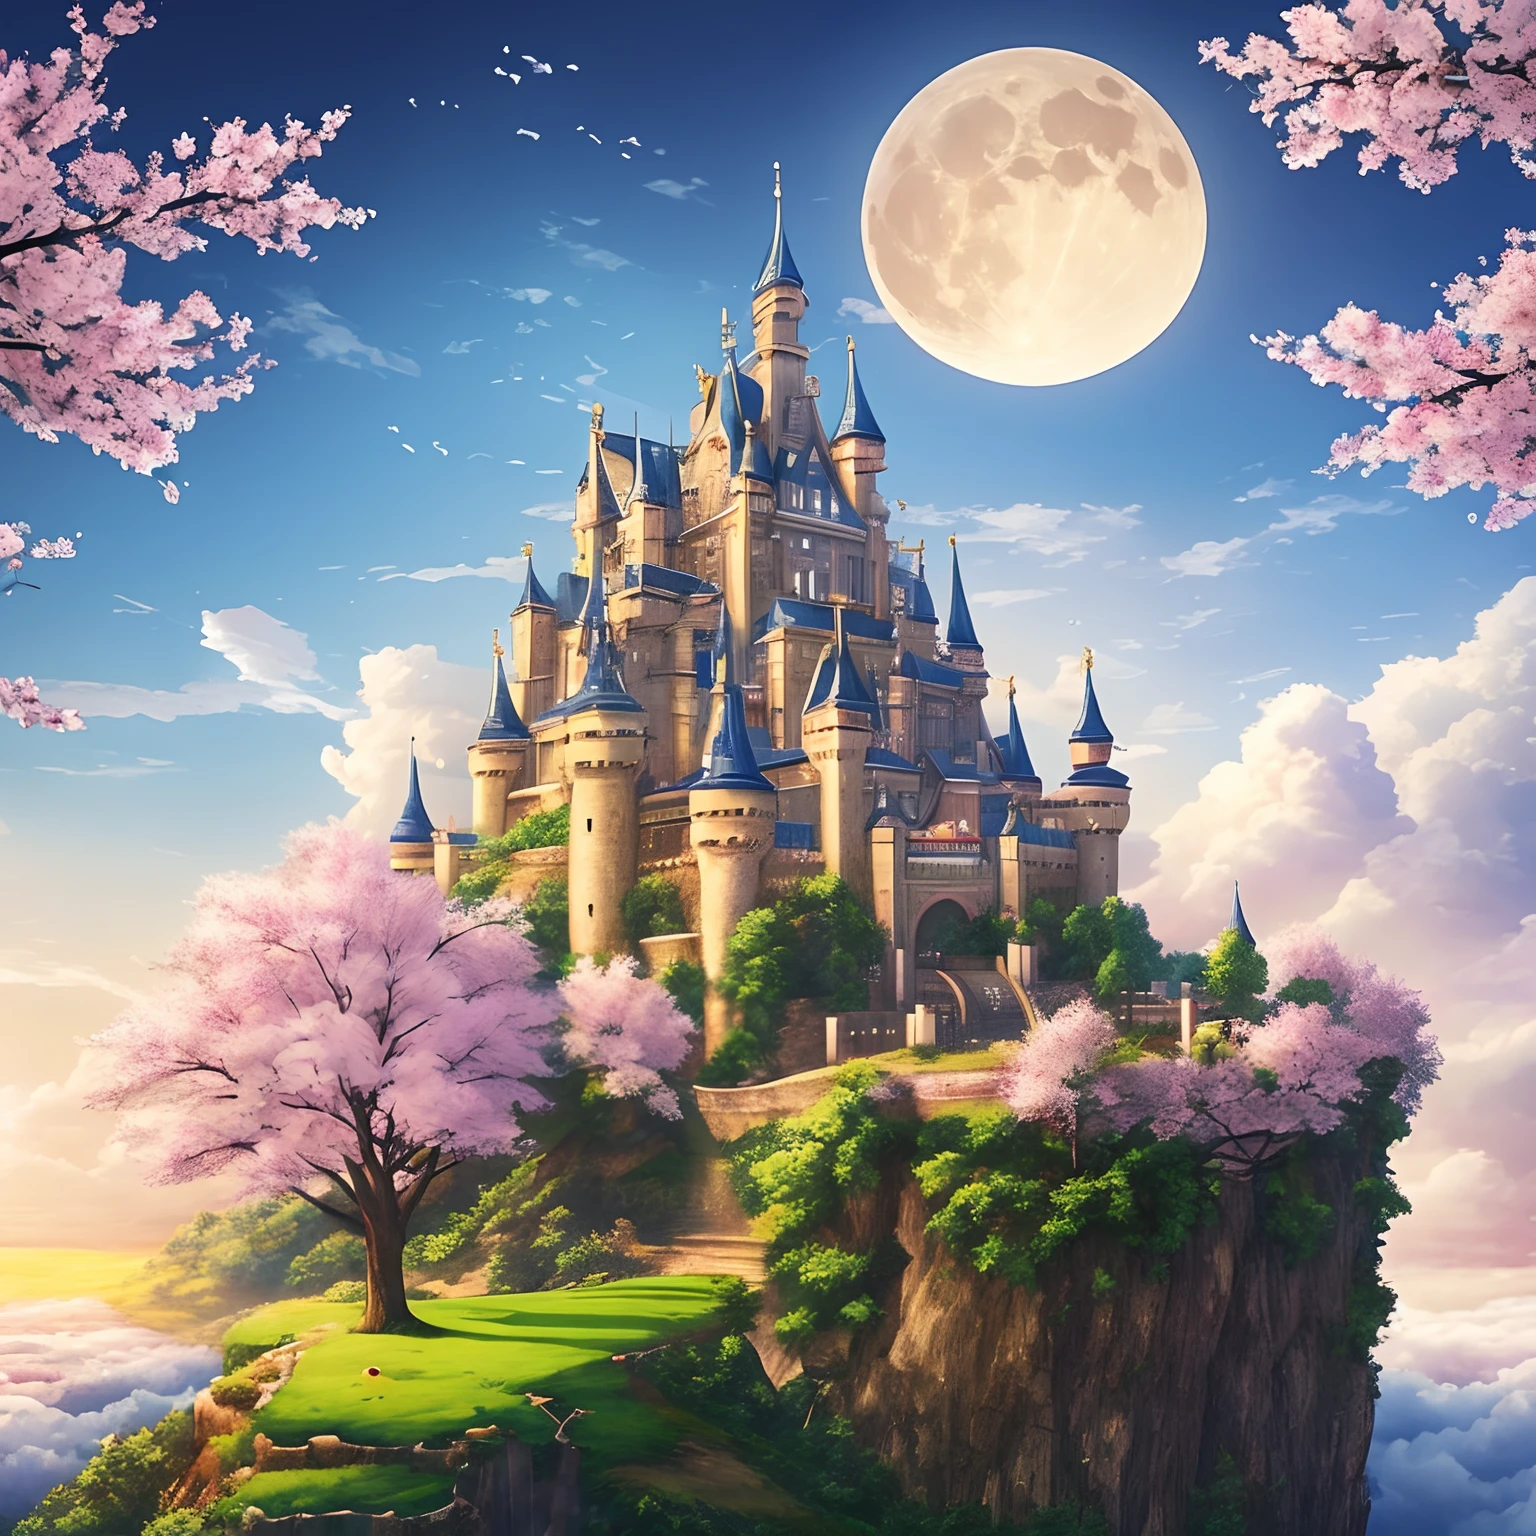 杰作、高品质、实际的、风景照、逼真、详细、喜欢照片、闪耀天空的城堡、天空之神城堡、天空之城、飞行城堡、荣耀城堡、云层之上的城堡、樱桃树々郁郁葱葱的城堡周围、樱花雪、瀑布、一轮月亮